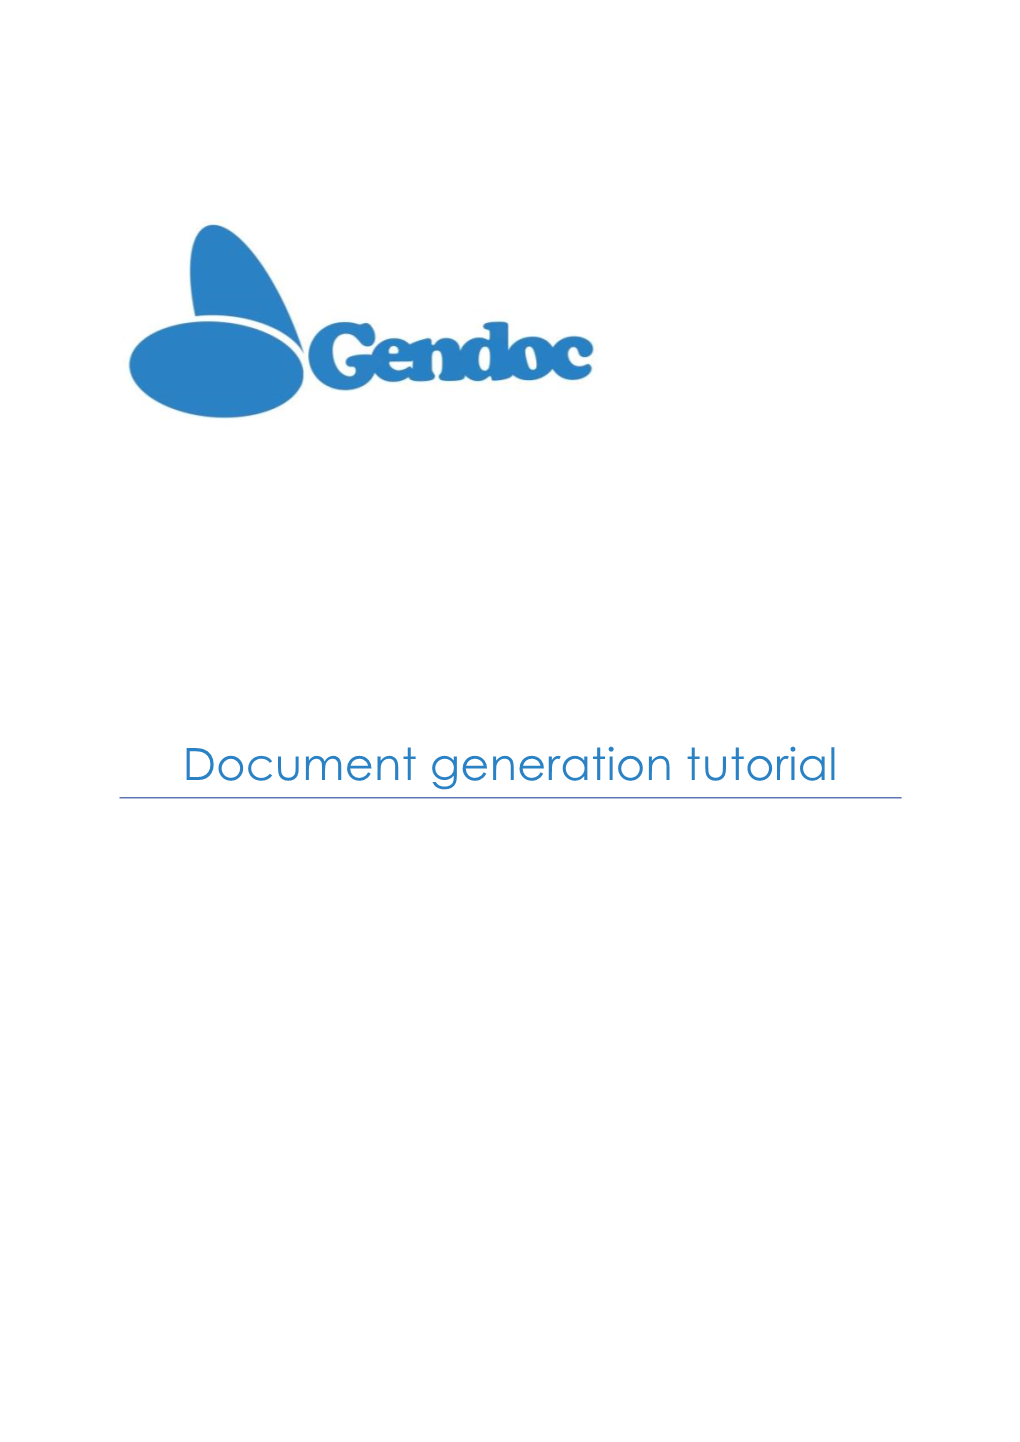 Document Generation Tutorial